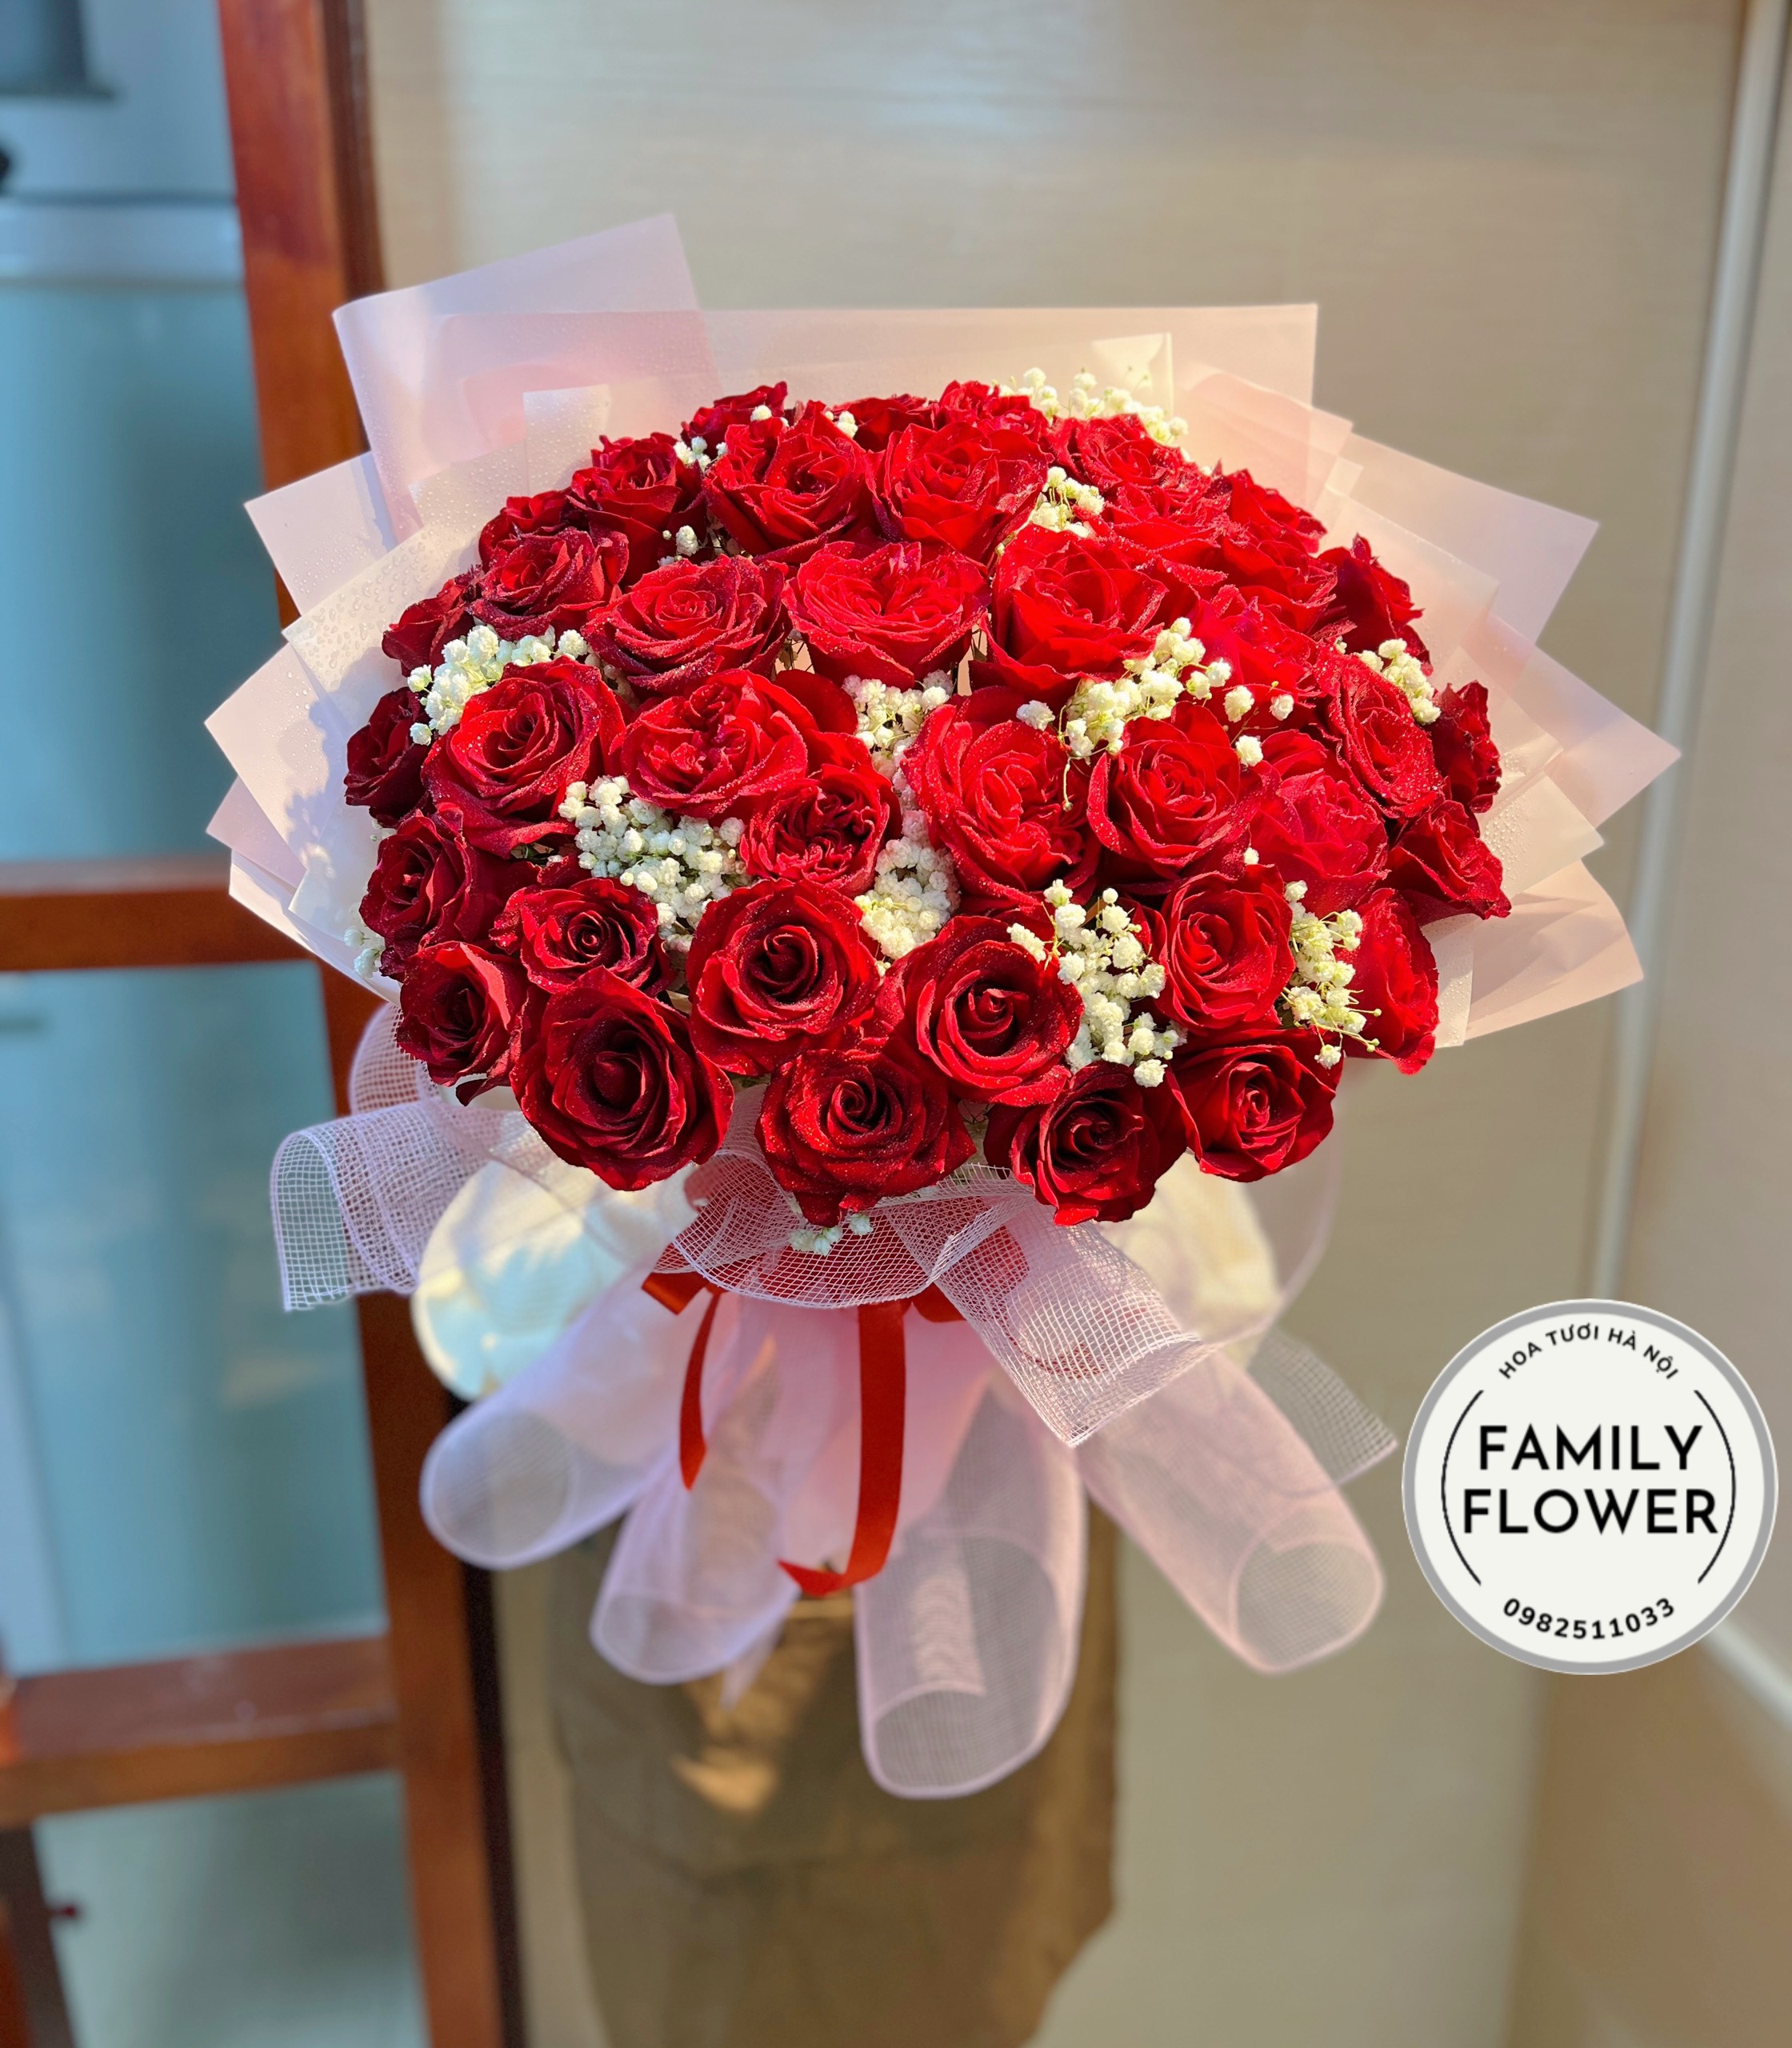 Bó hoa hồng đỏ tặng người yêu ngày 8 tháng 3 ở Hà Nội mua hoa hồng đỏ Hà Nội 